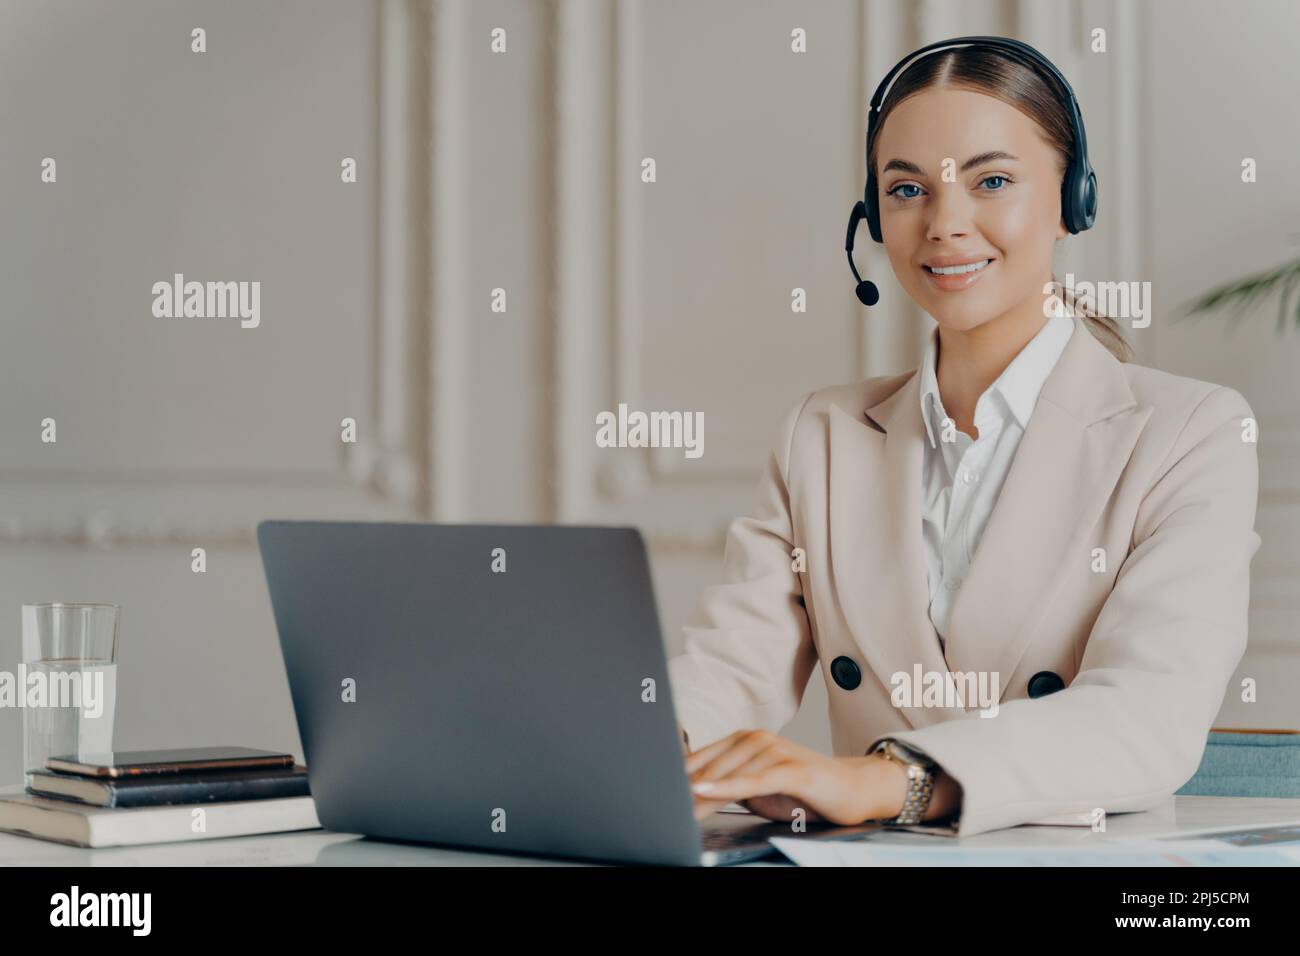 Fröhliche Kundenbetreuerin, die in einem modernen Callcenter am Computer arbeitet, glückliche Geschäftsfrau, die vor der Kamera lächelt, während sie auf ihm sitzt Stockfoto